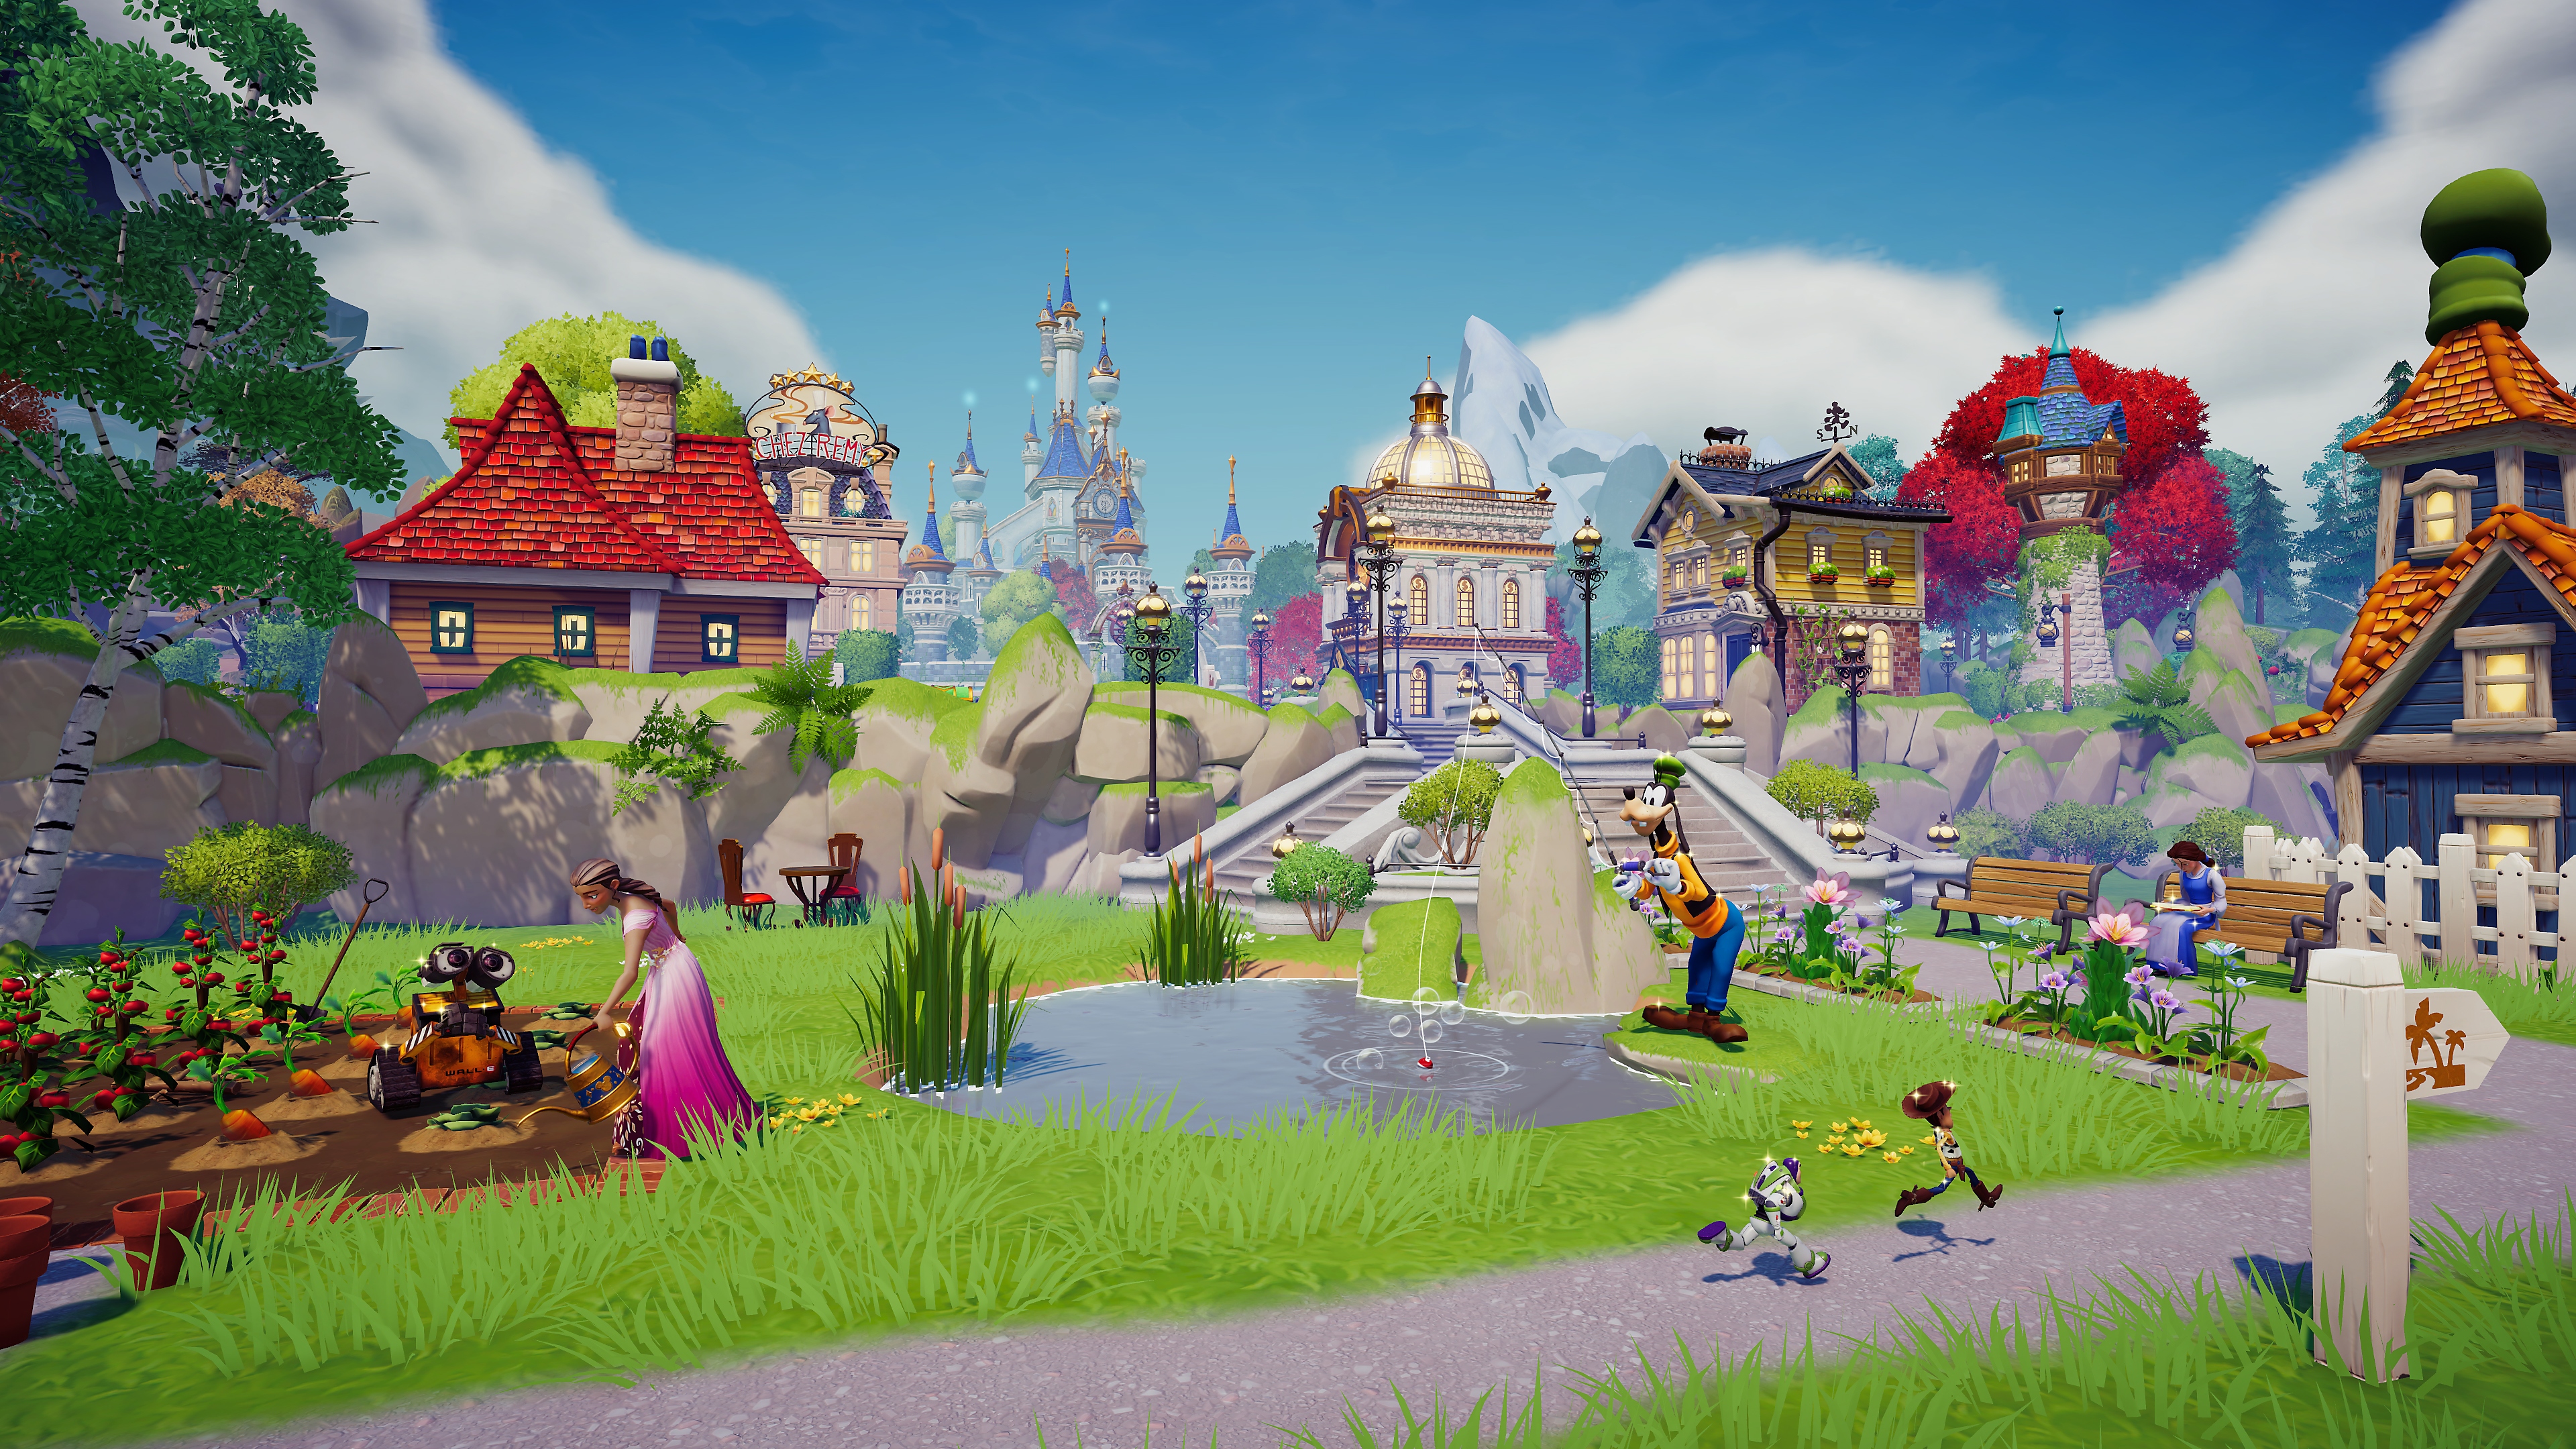 Disney Dreamlight Valley – skjermbilde fra en scene i en landsby